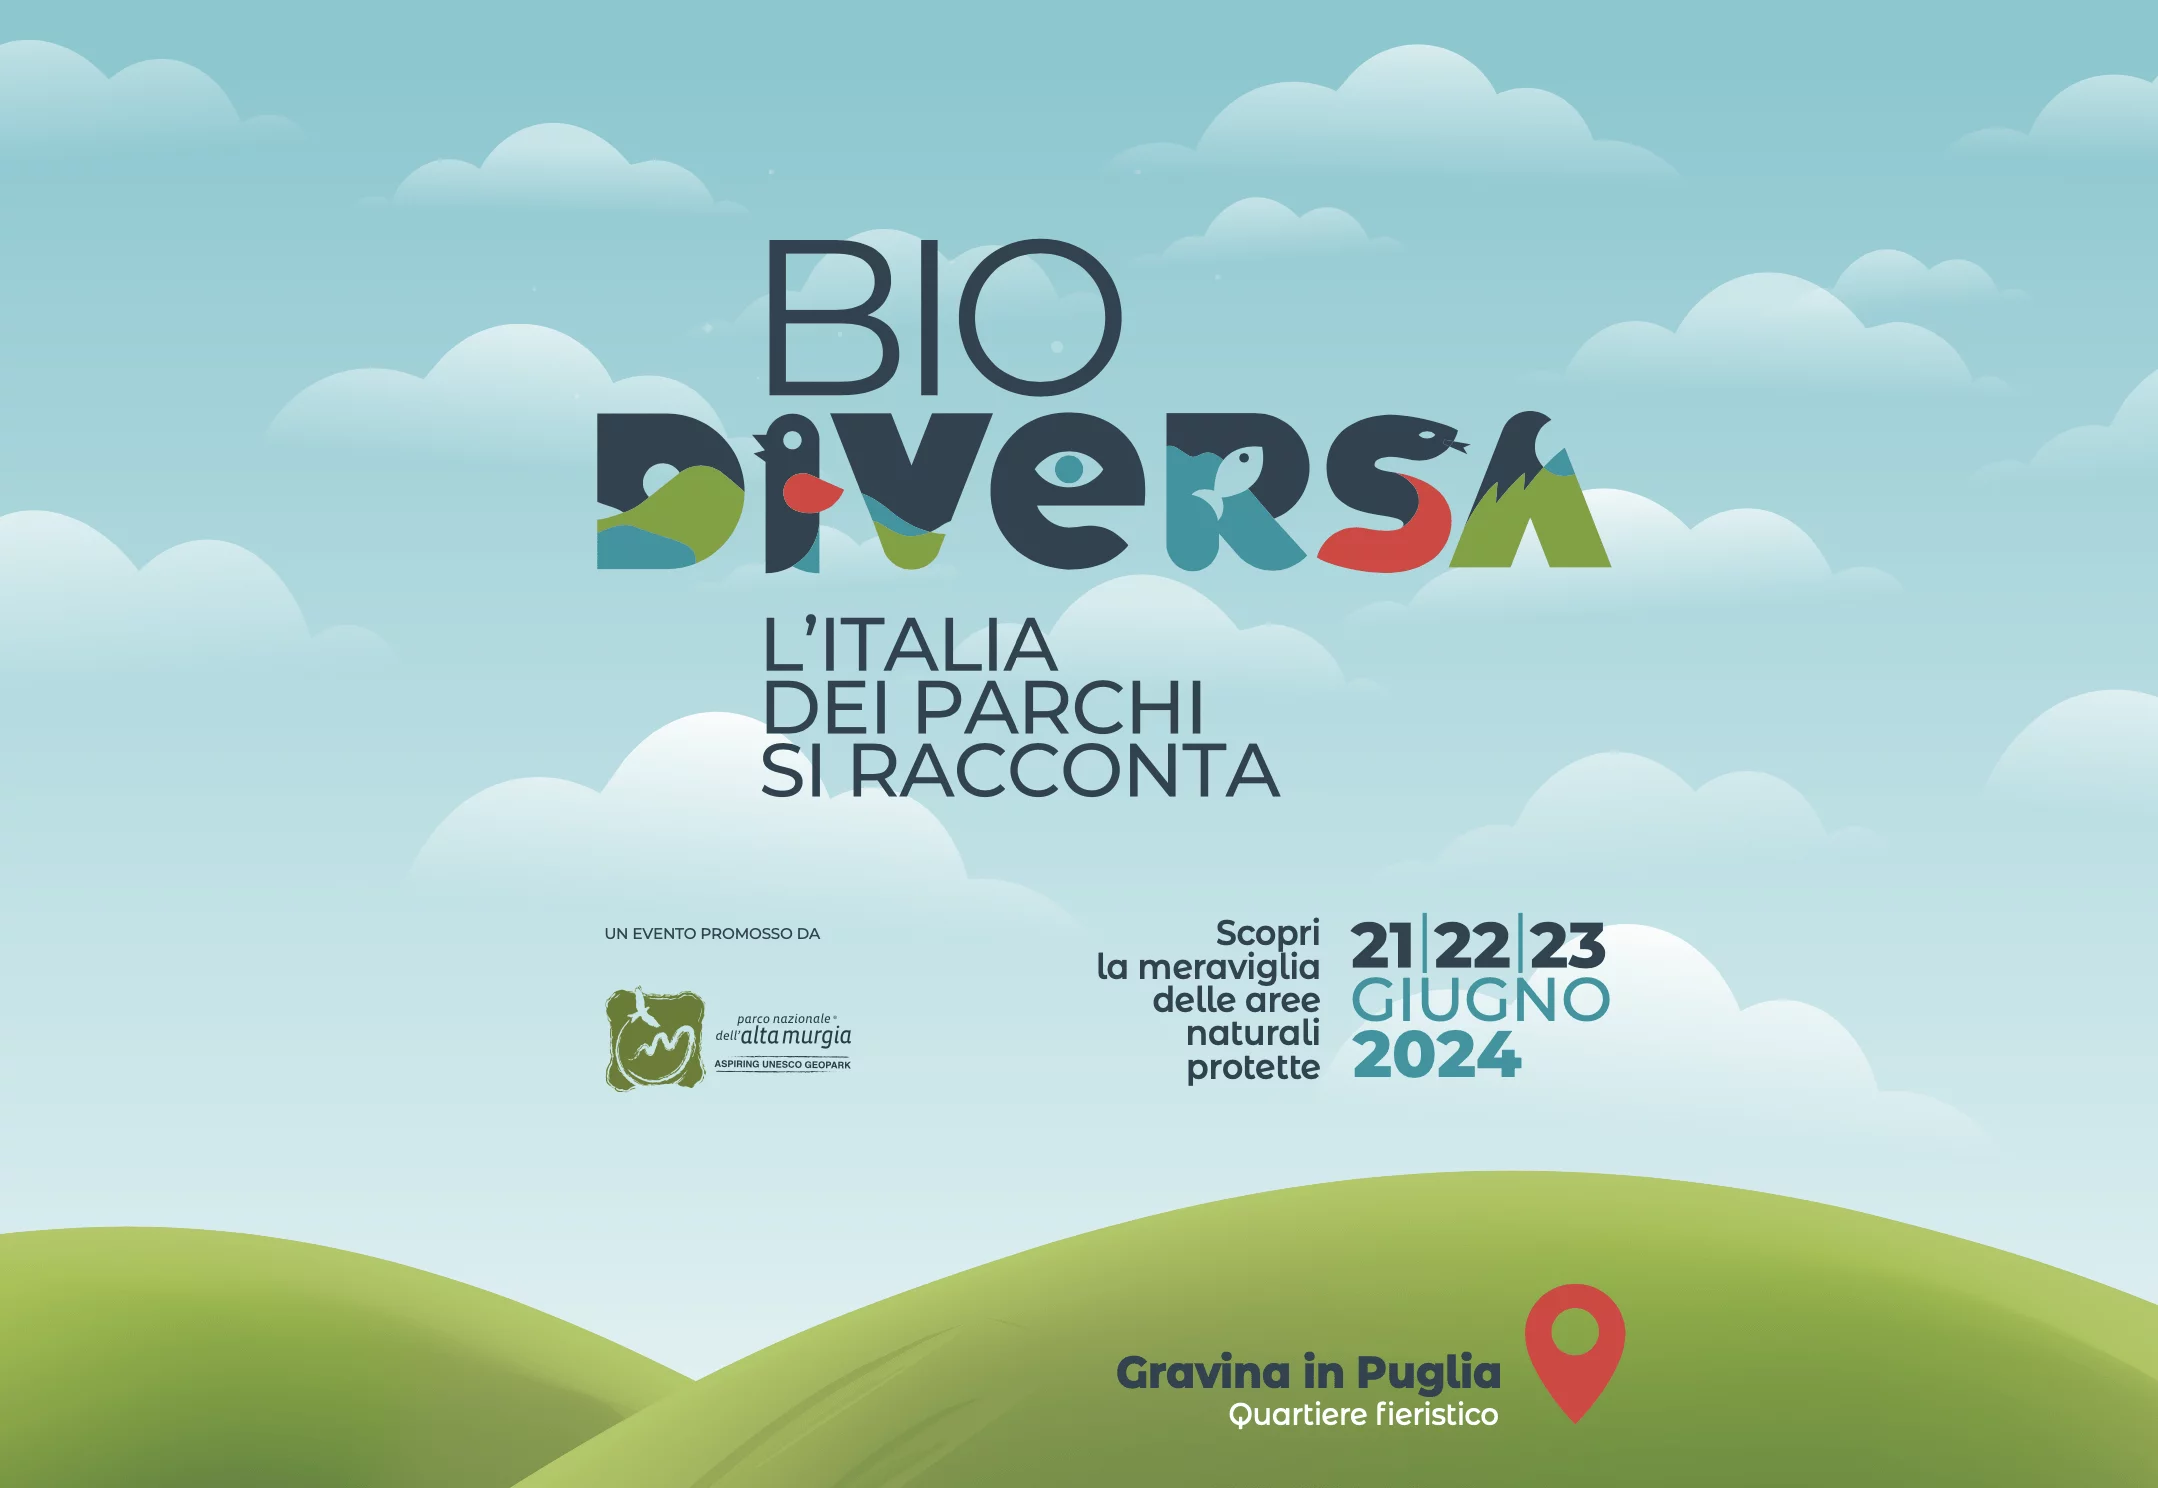 Il Parco di Pantelleria partecipa a “Biodiversa– L'Italia dei Parchi si racconta”, dal 21 al 23 giungo a Gravina in Puglia 